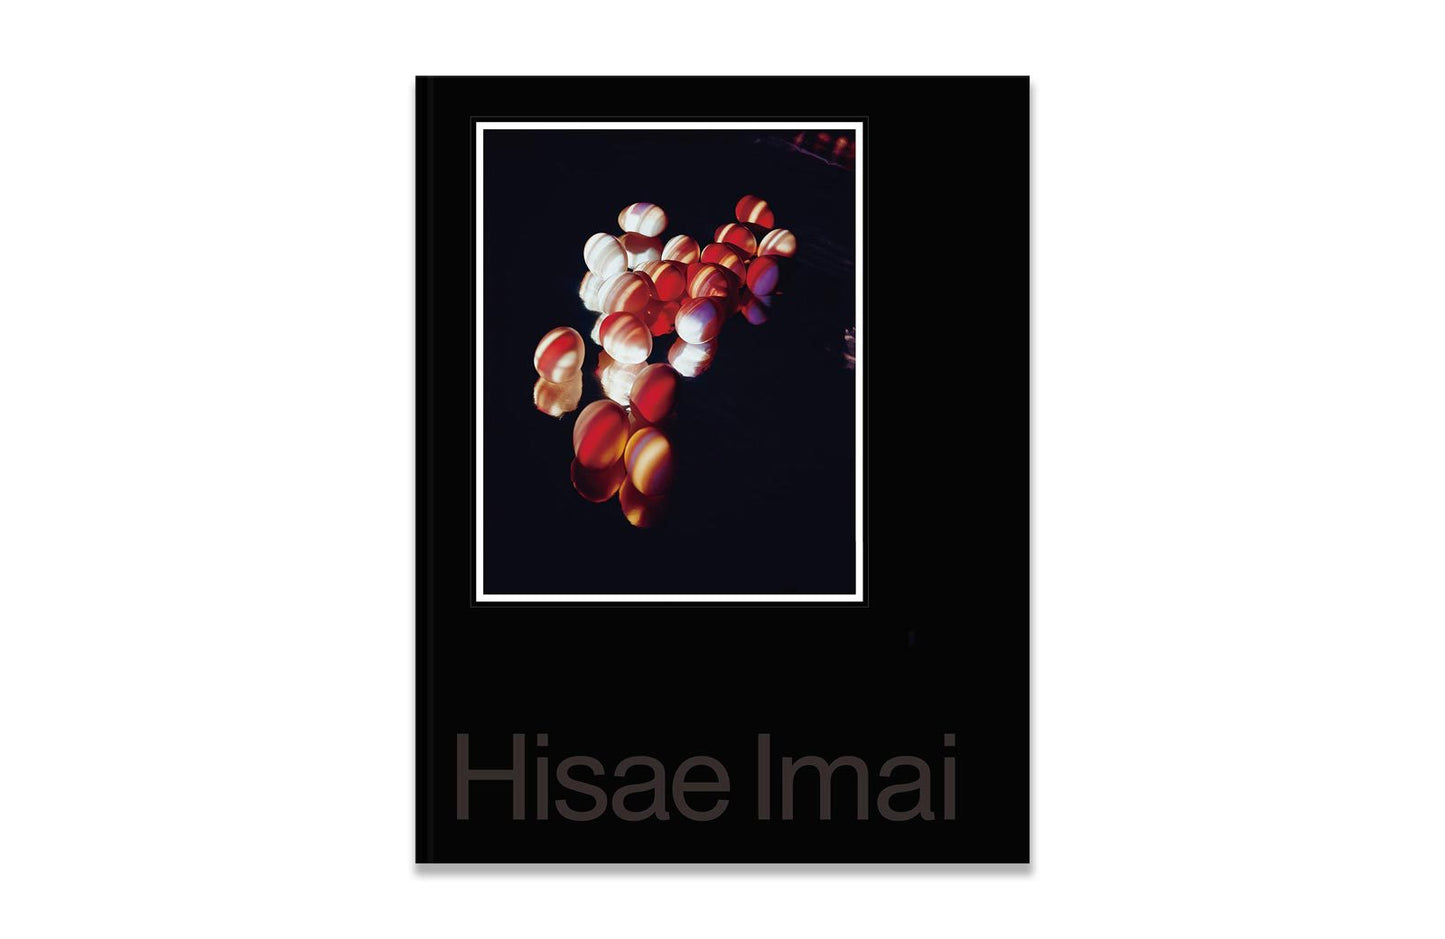 Hisae Imai by Masako Toda